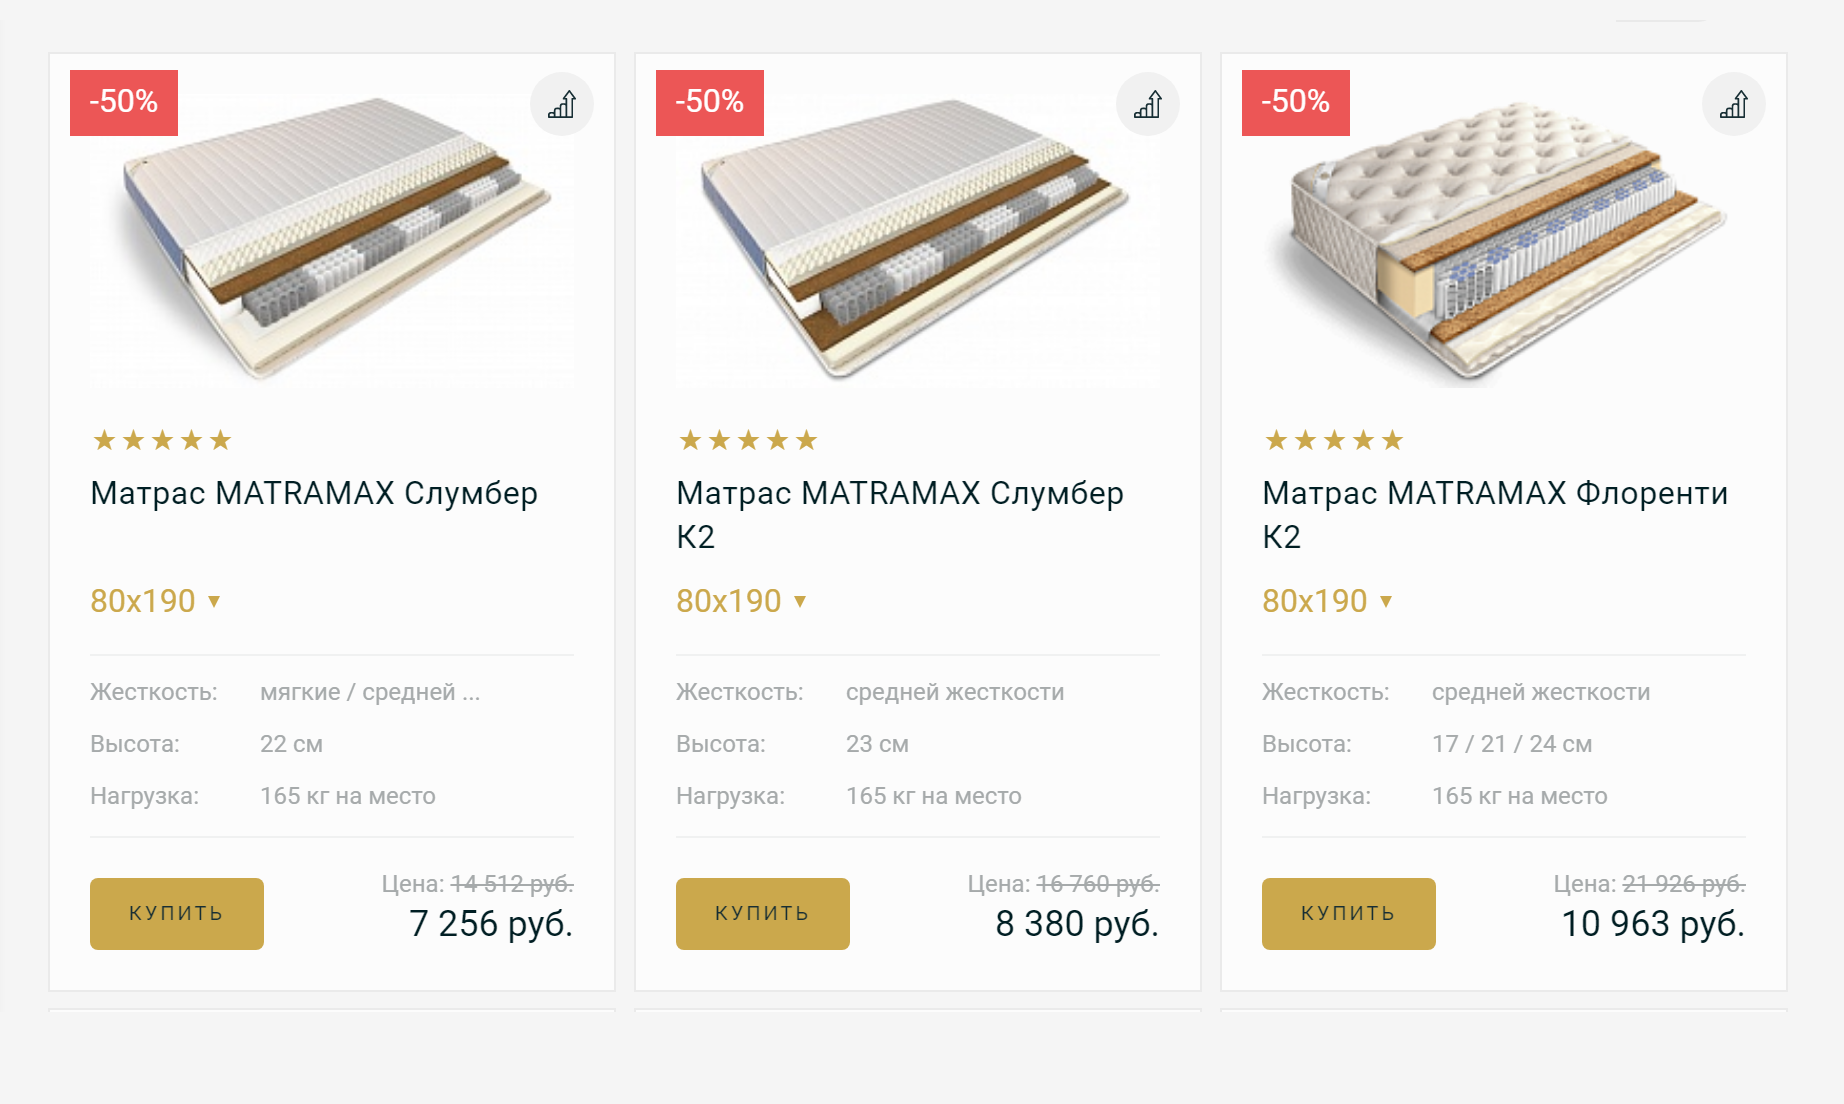 Матрасы в интернет-магазине «Матрамакс»: цены от 7256 <span class=ruble>Р</span> и выше для&nbsp;односпальной кровати